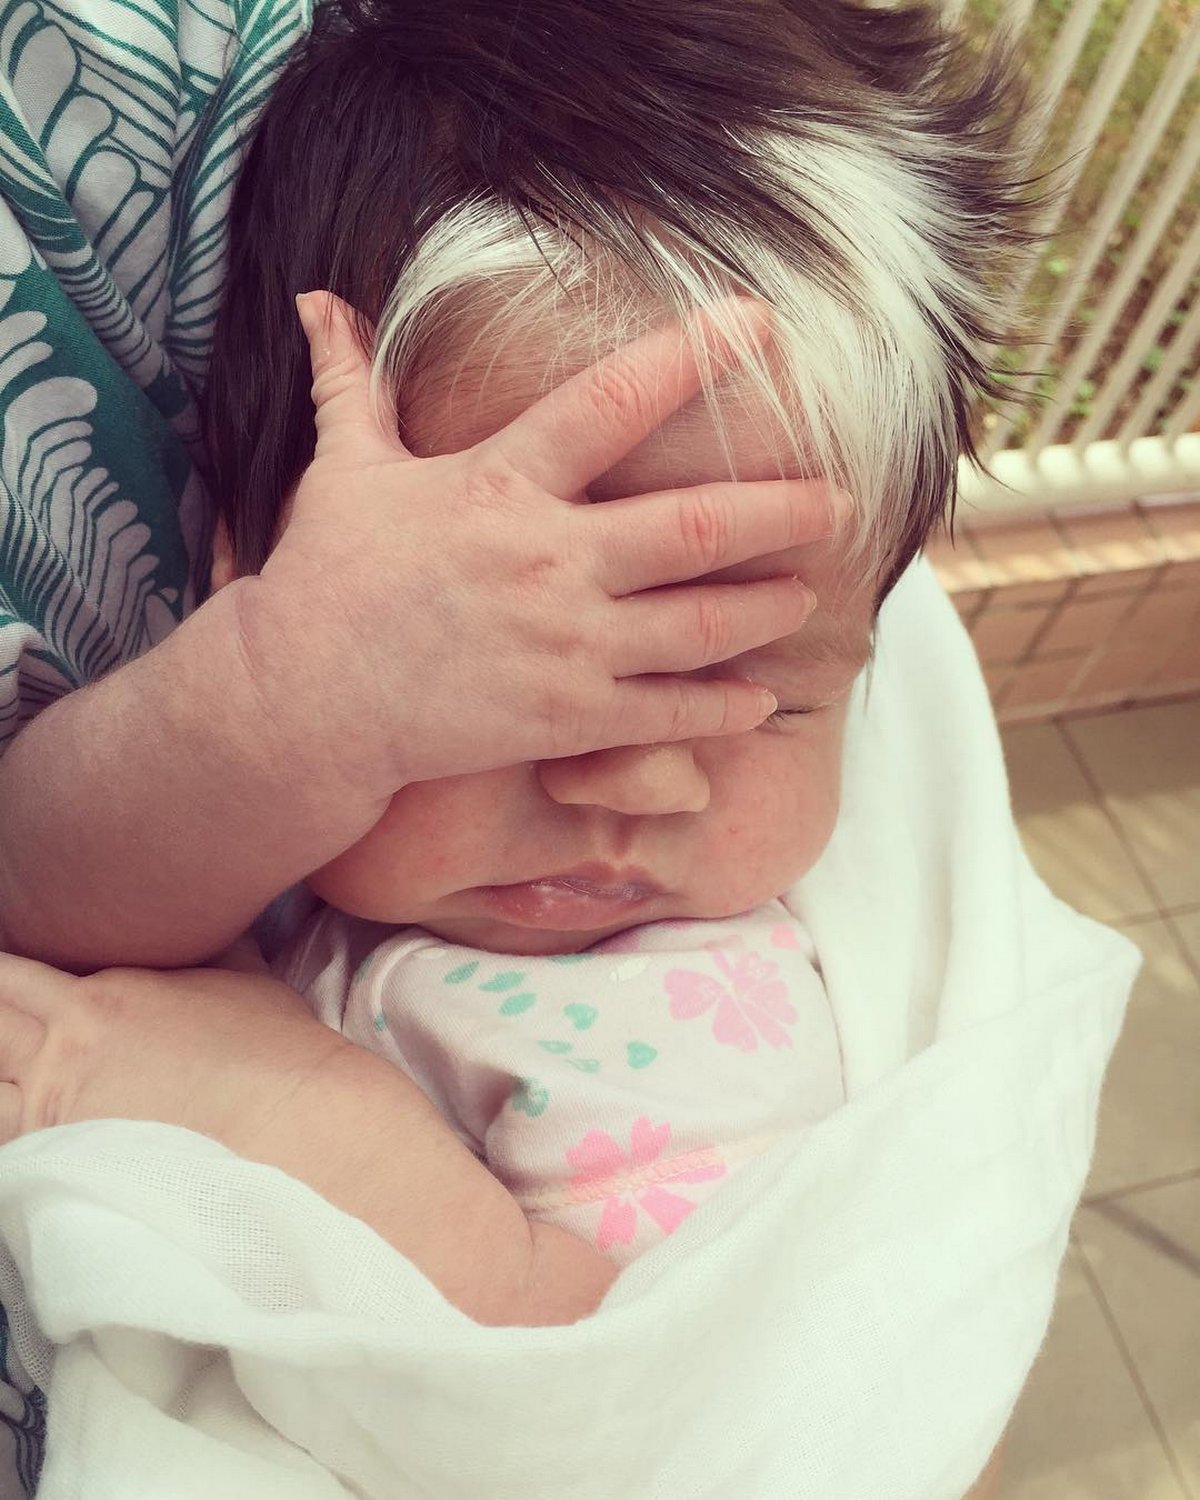 Cette petite fille de deux ans est née avec une mèche blanche dans les cheveux et sa mère l’encourage à accepter son apparence unique